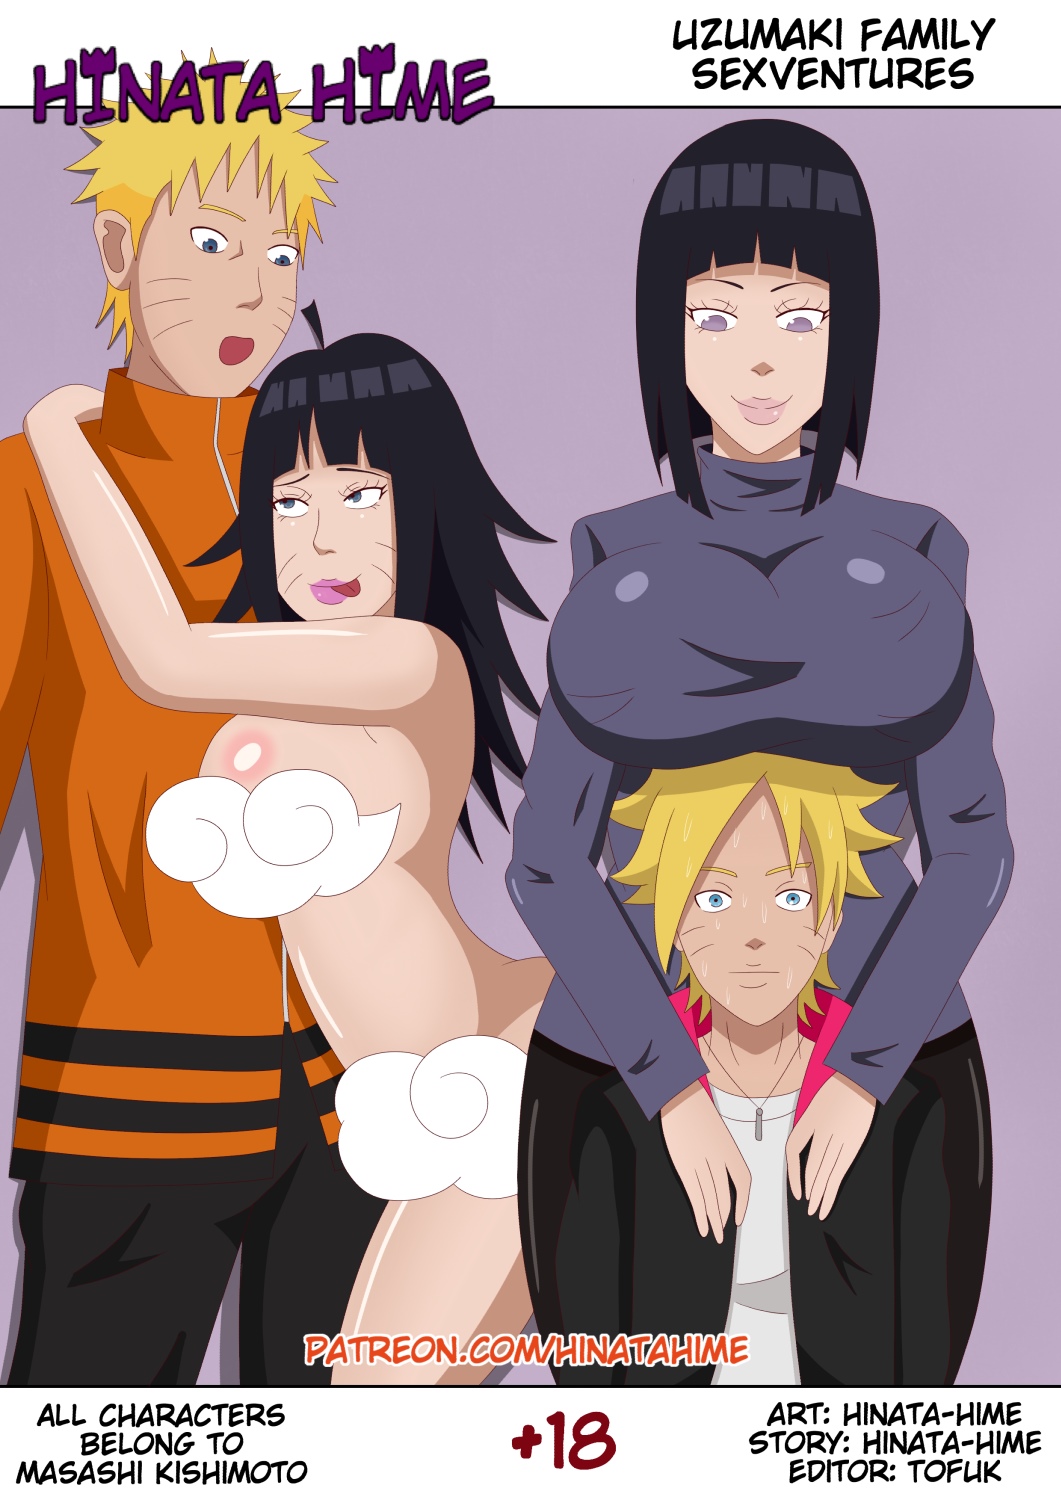 Naruto – Uzumaki Family Sexventures by Hinata-hime